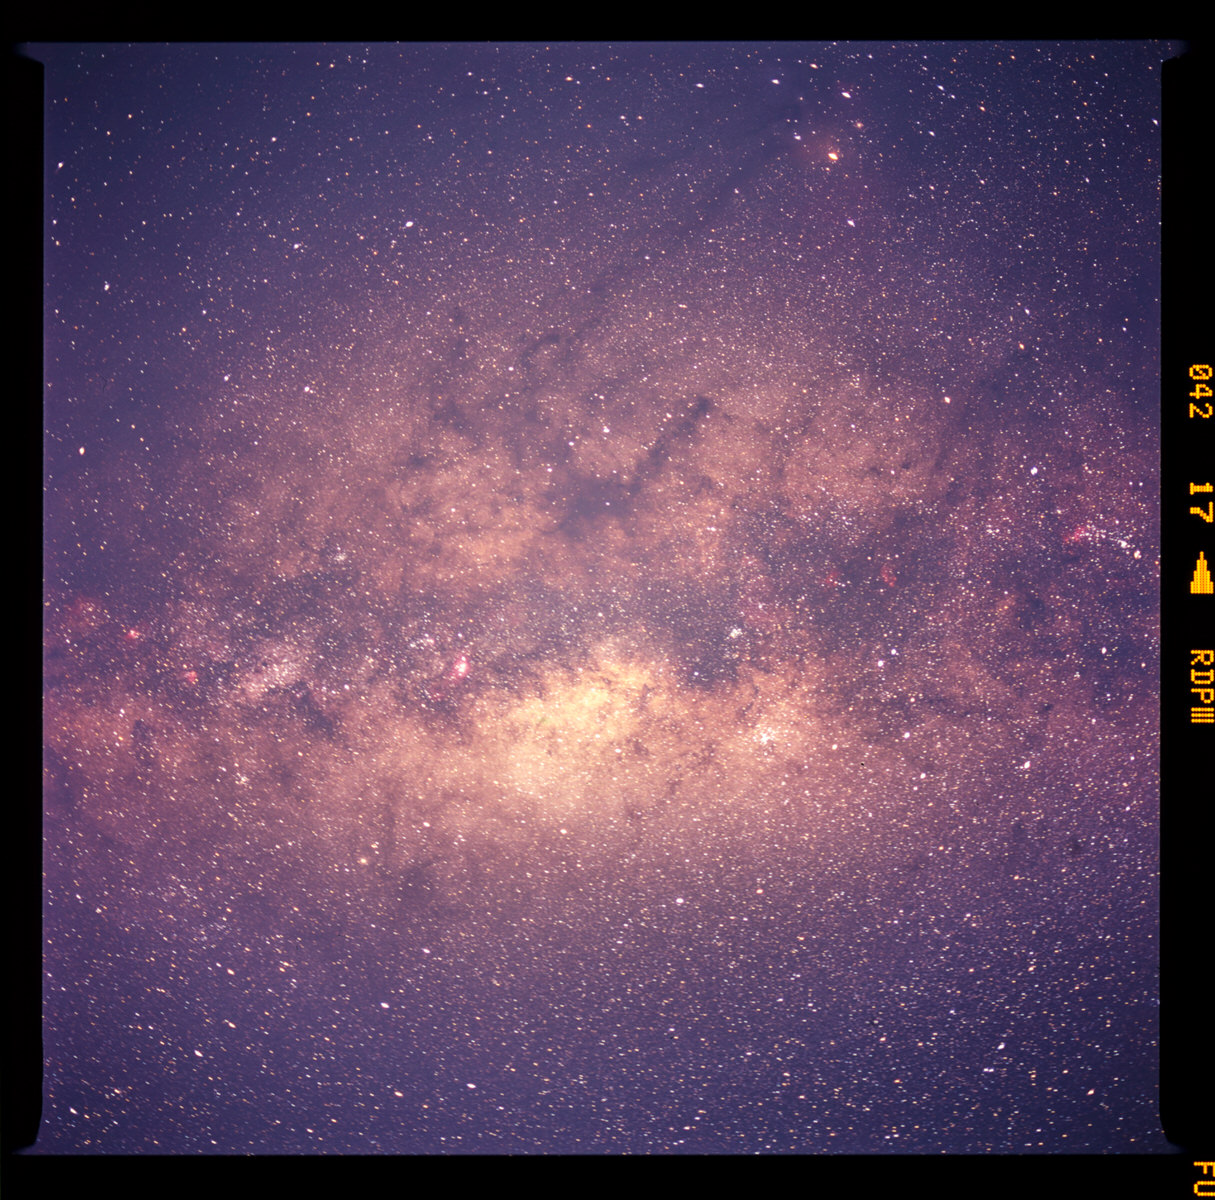 Nhiếp ảnh gia chia sẻ bộ ảnh chụp ảnh Milky Way bằng máy ảnh film medium format